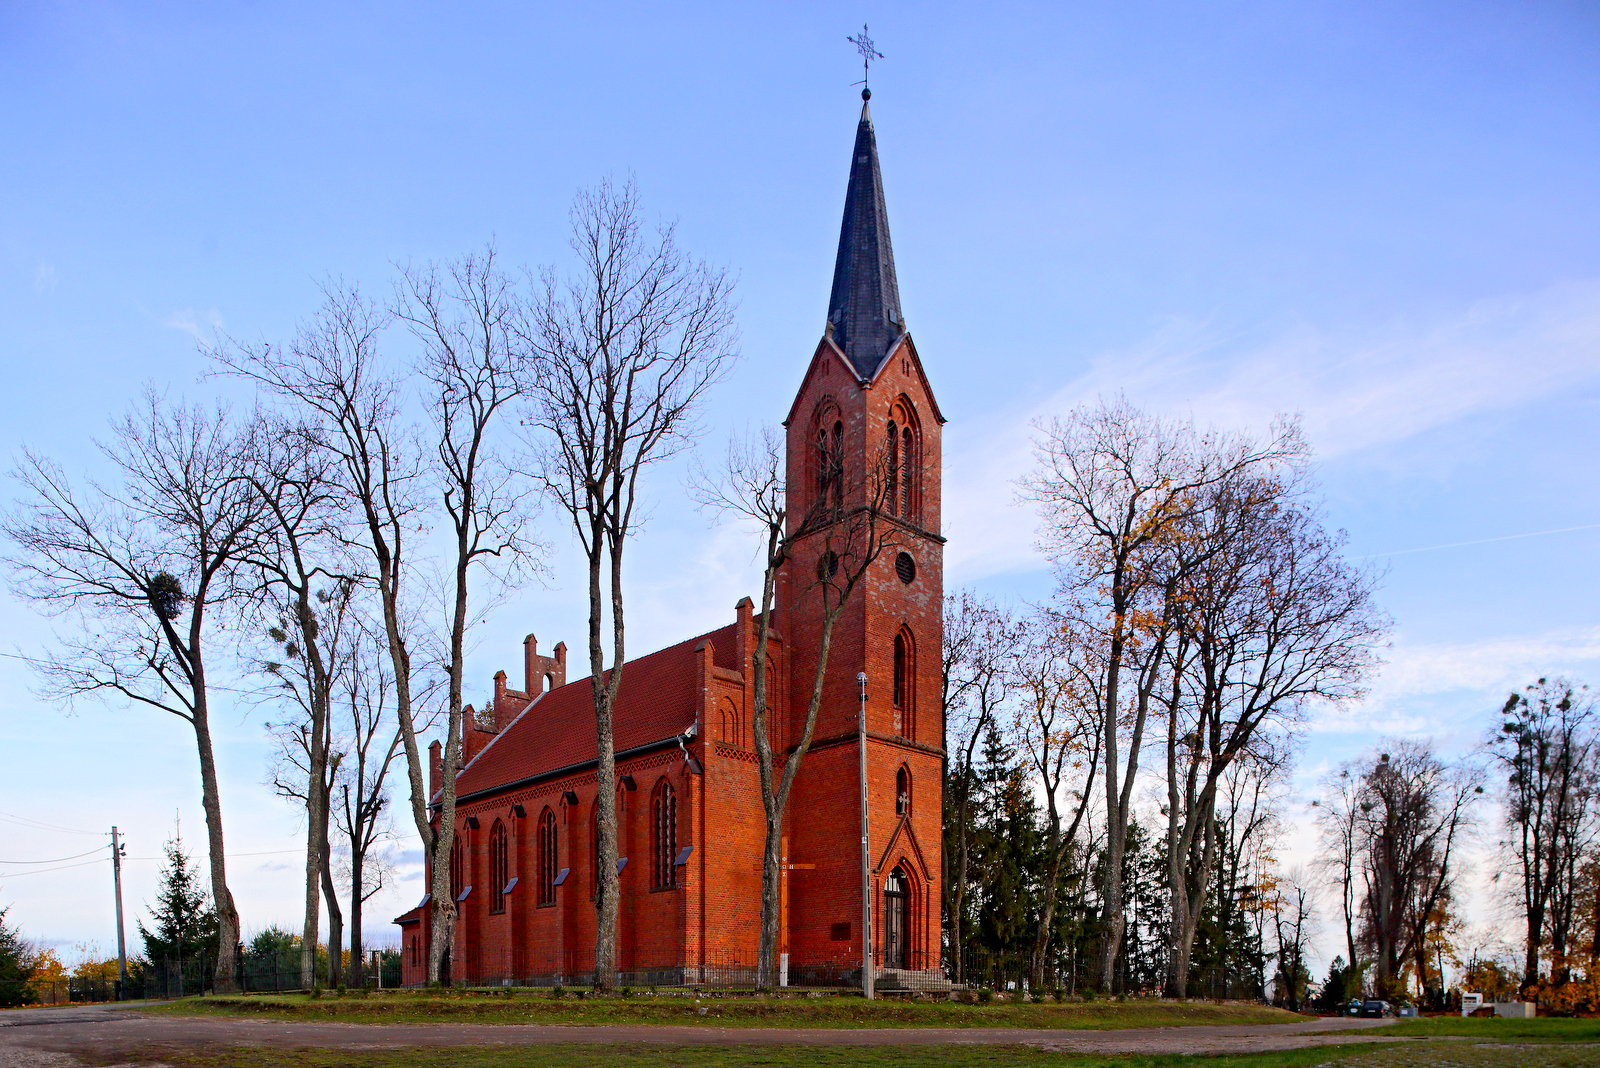 Kościół pw. Najświętszej Trójcy w Dźwierzutach